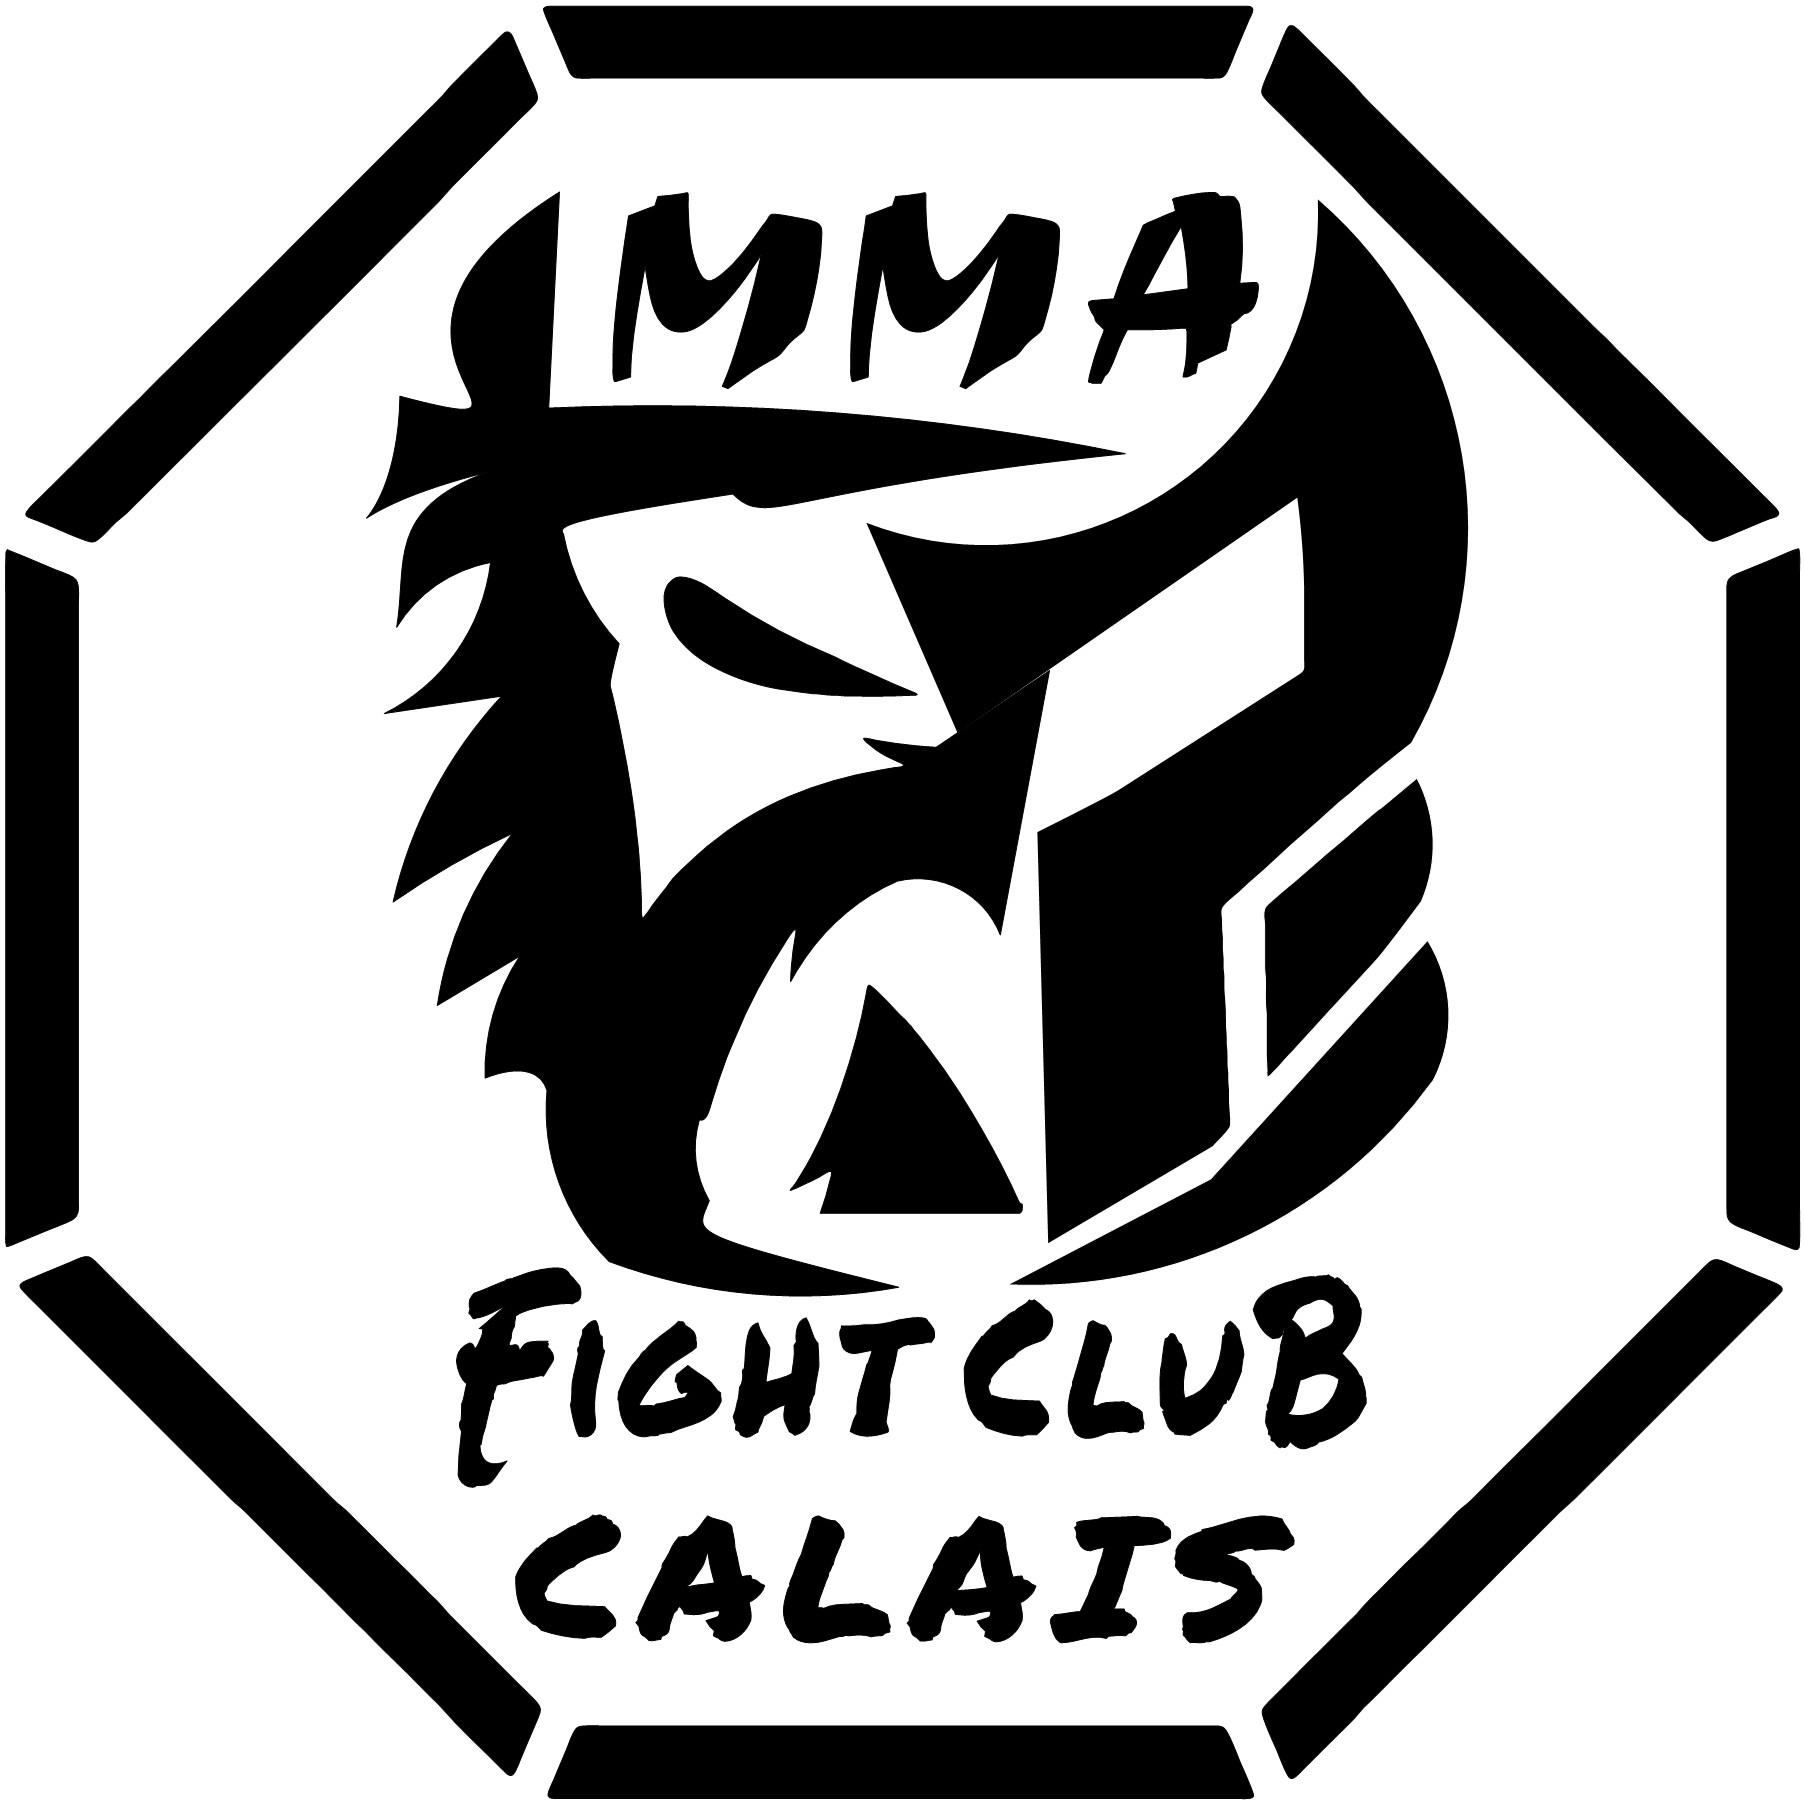 MMA Fight Club Calais